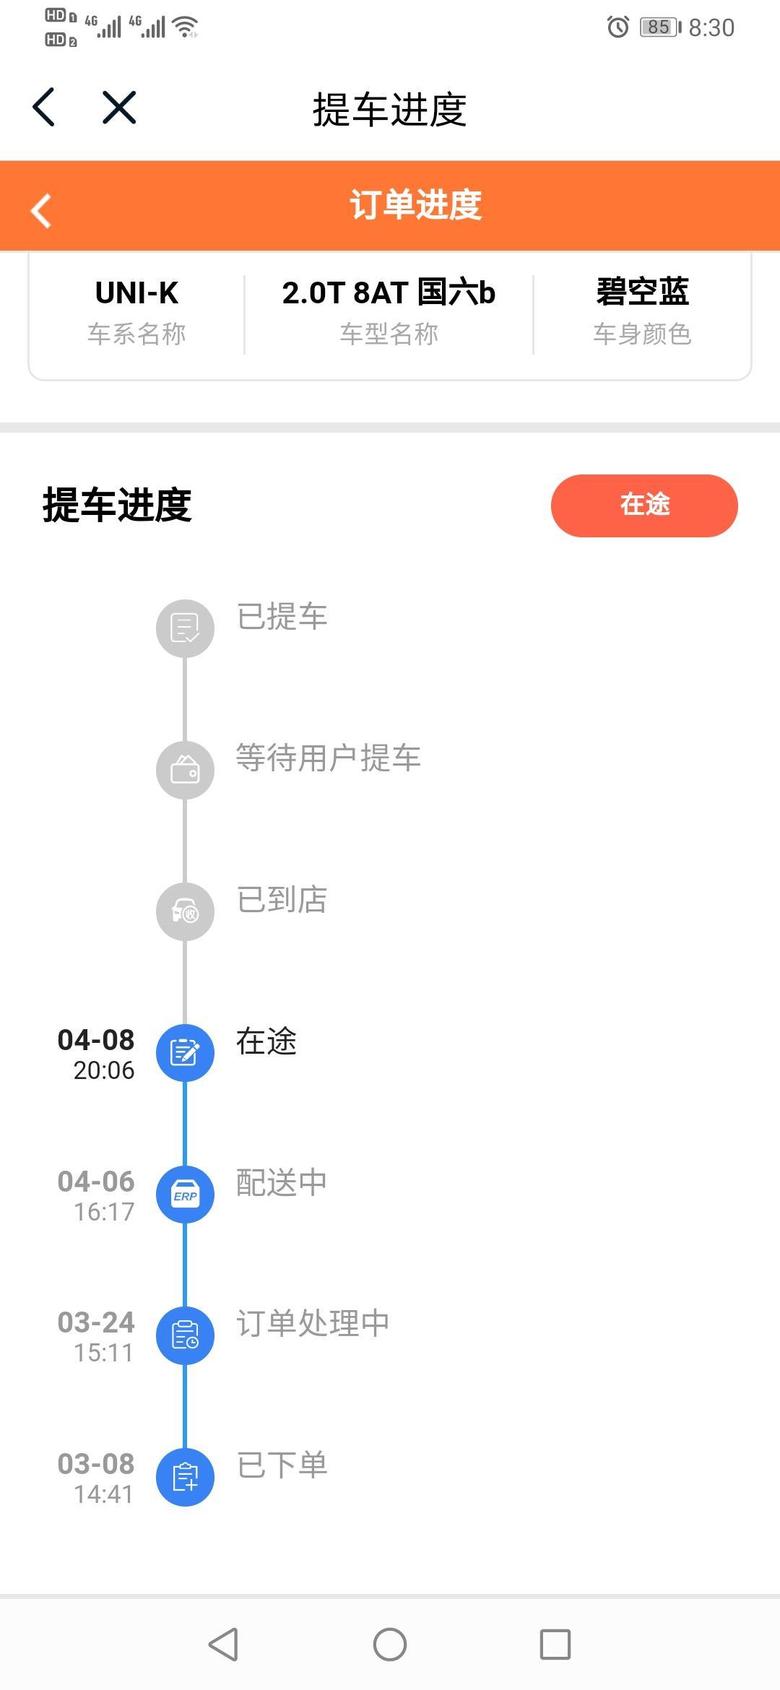 长安uni k-终于看到点署光了但有个小疑问，提车进度之前明明是3月3日下单，怎么变成3月8日下单呢？